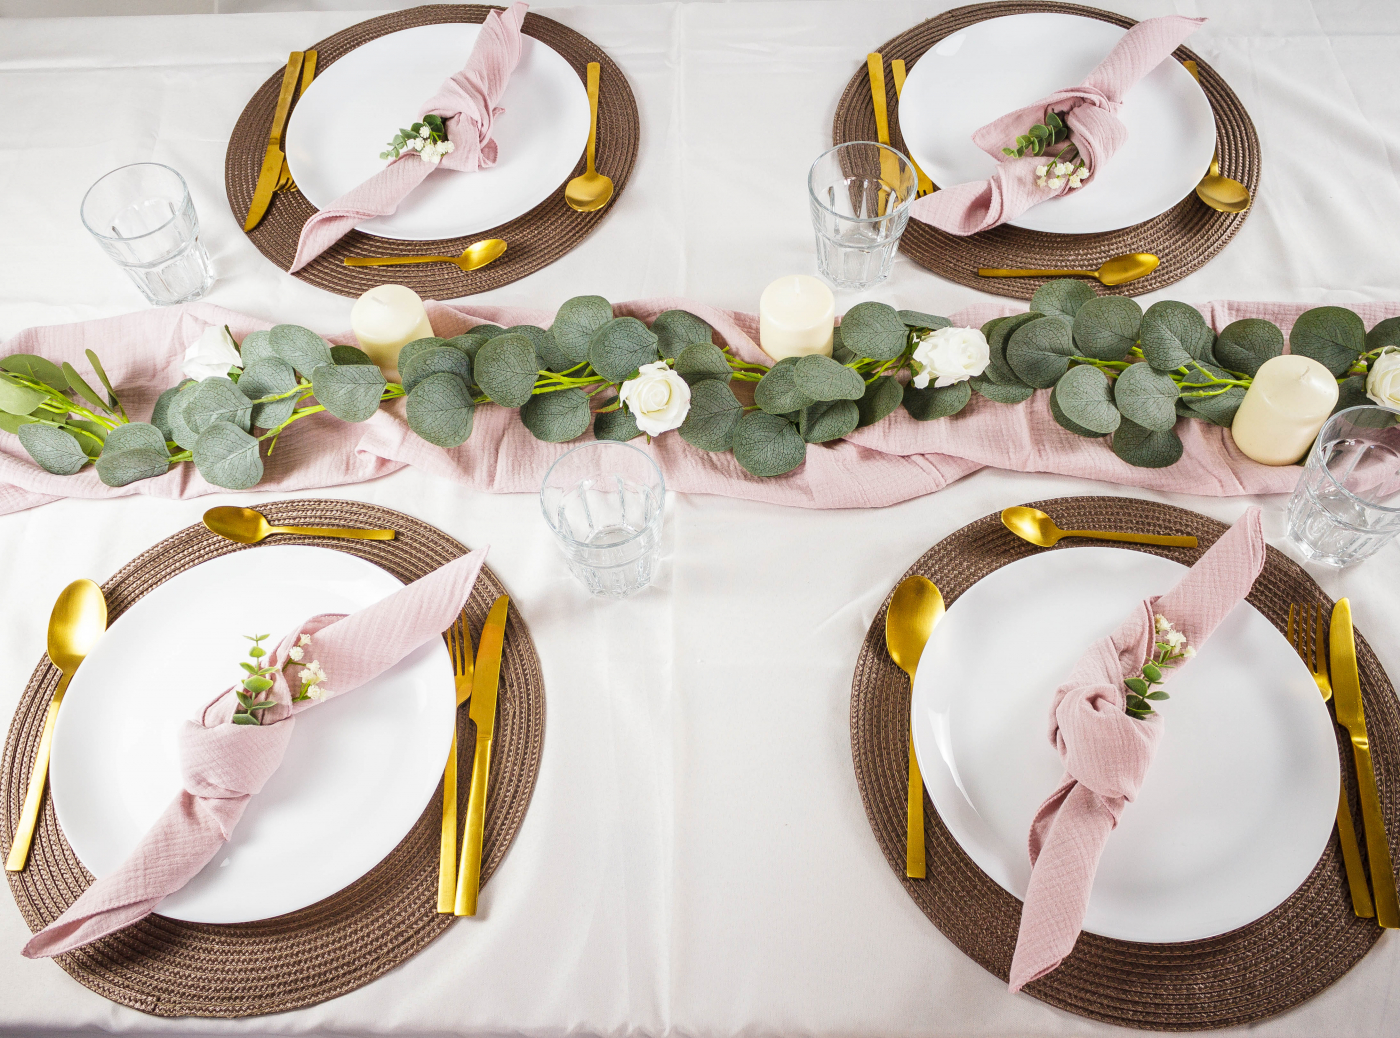 Schöne Tischdekoration für die Hochzeitsfeier mit rosa Servietten, frischen Blumen und goldenen Bestecken.